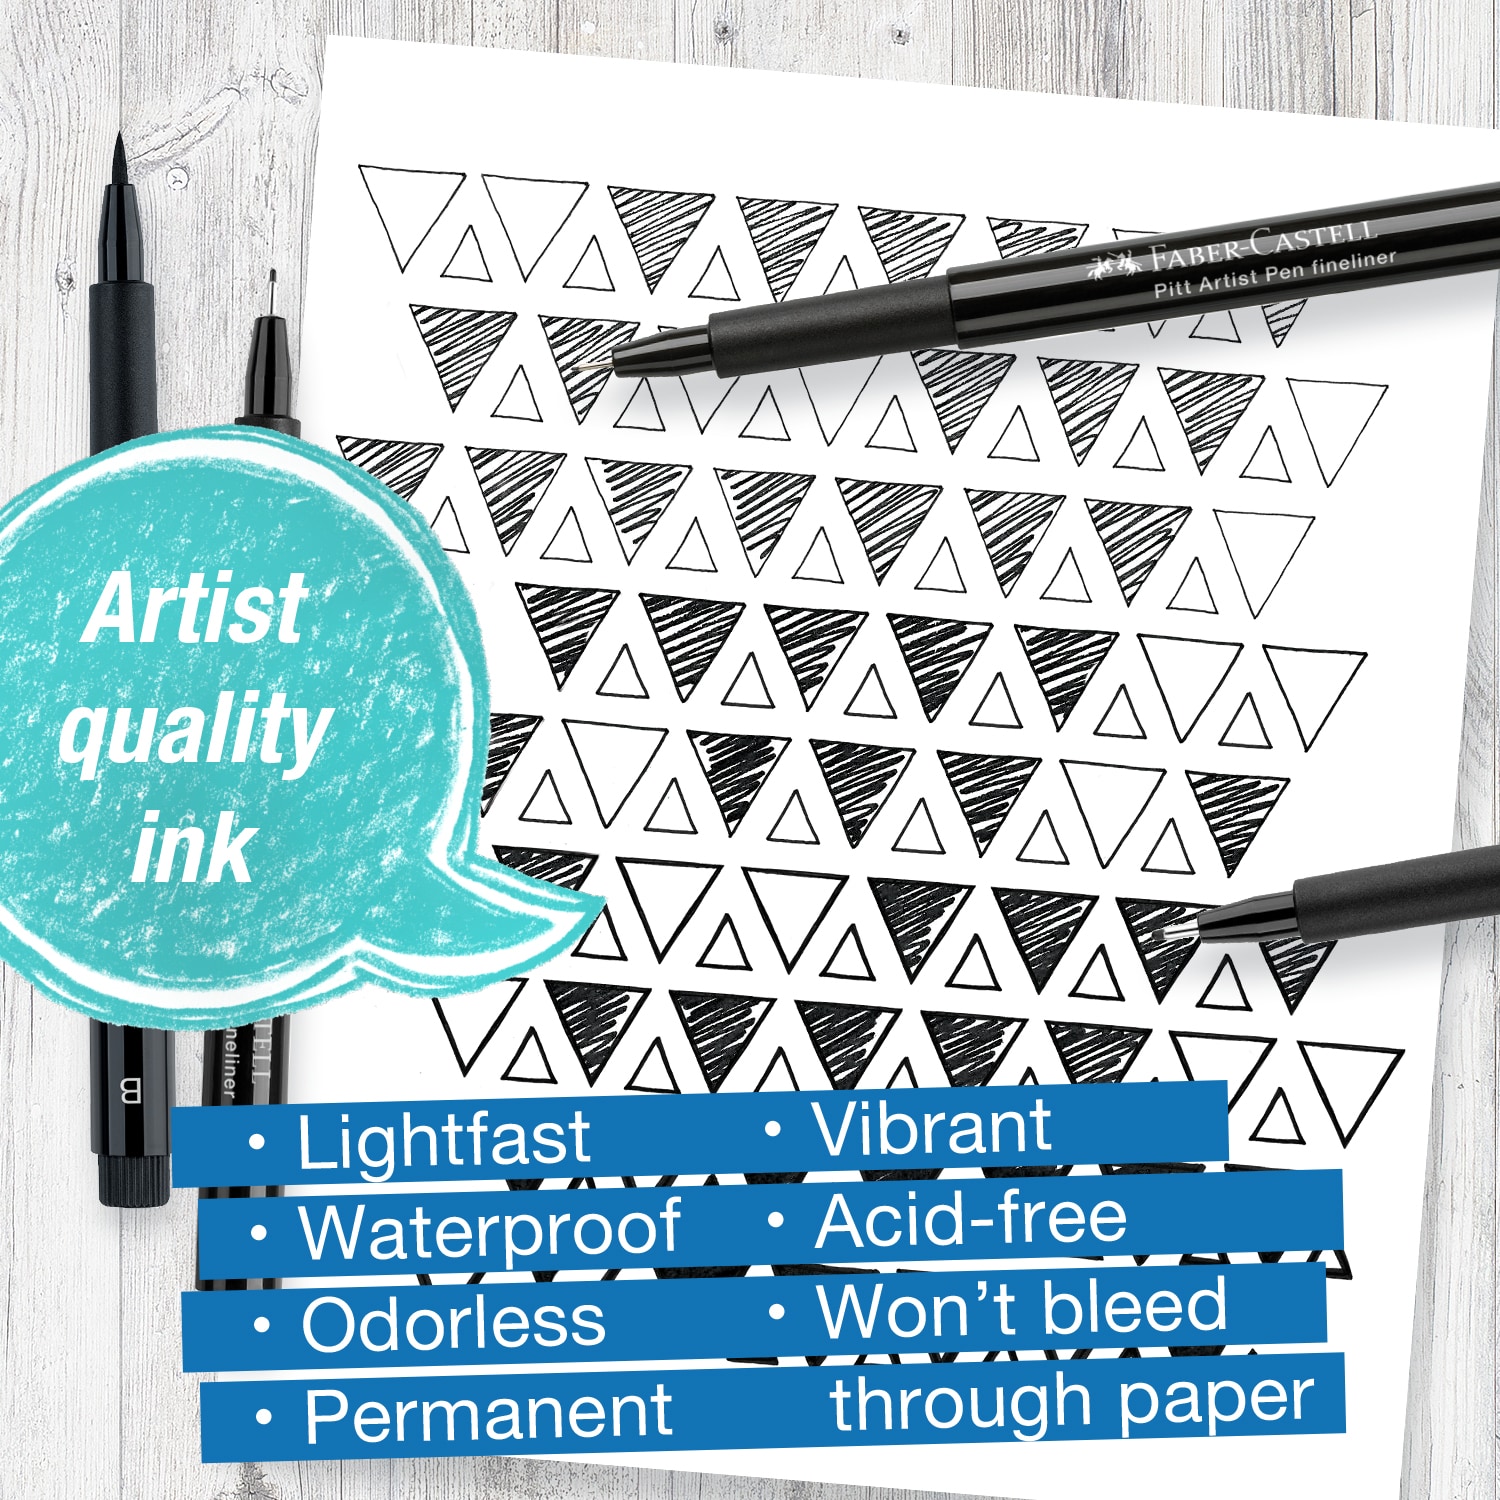  Faber-Castell Pitt Artist Pens Essential Set - 4 Black